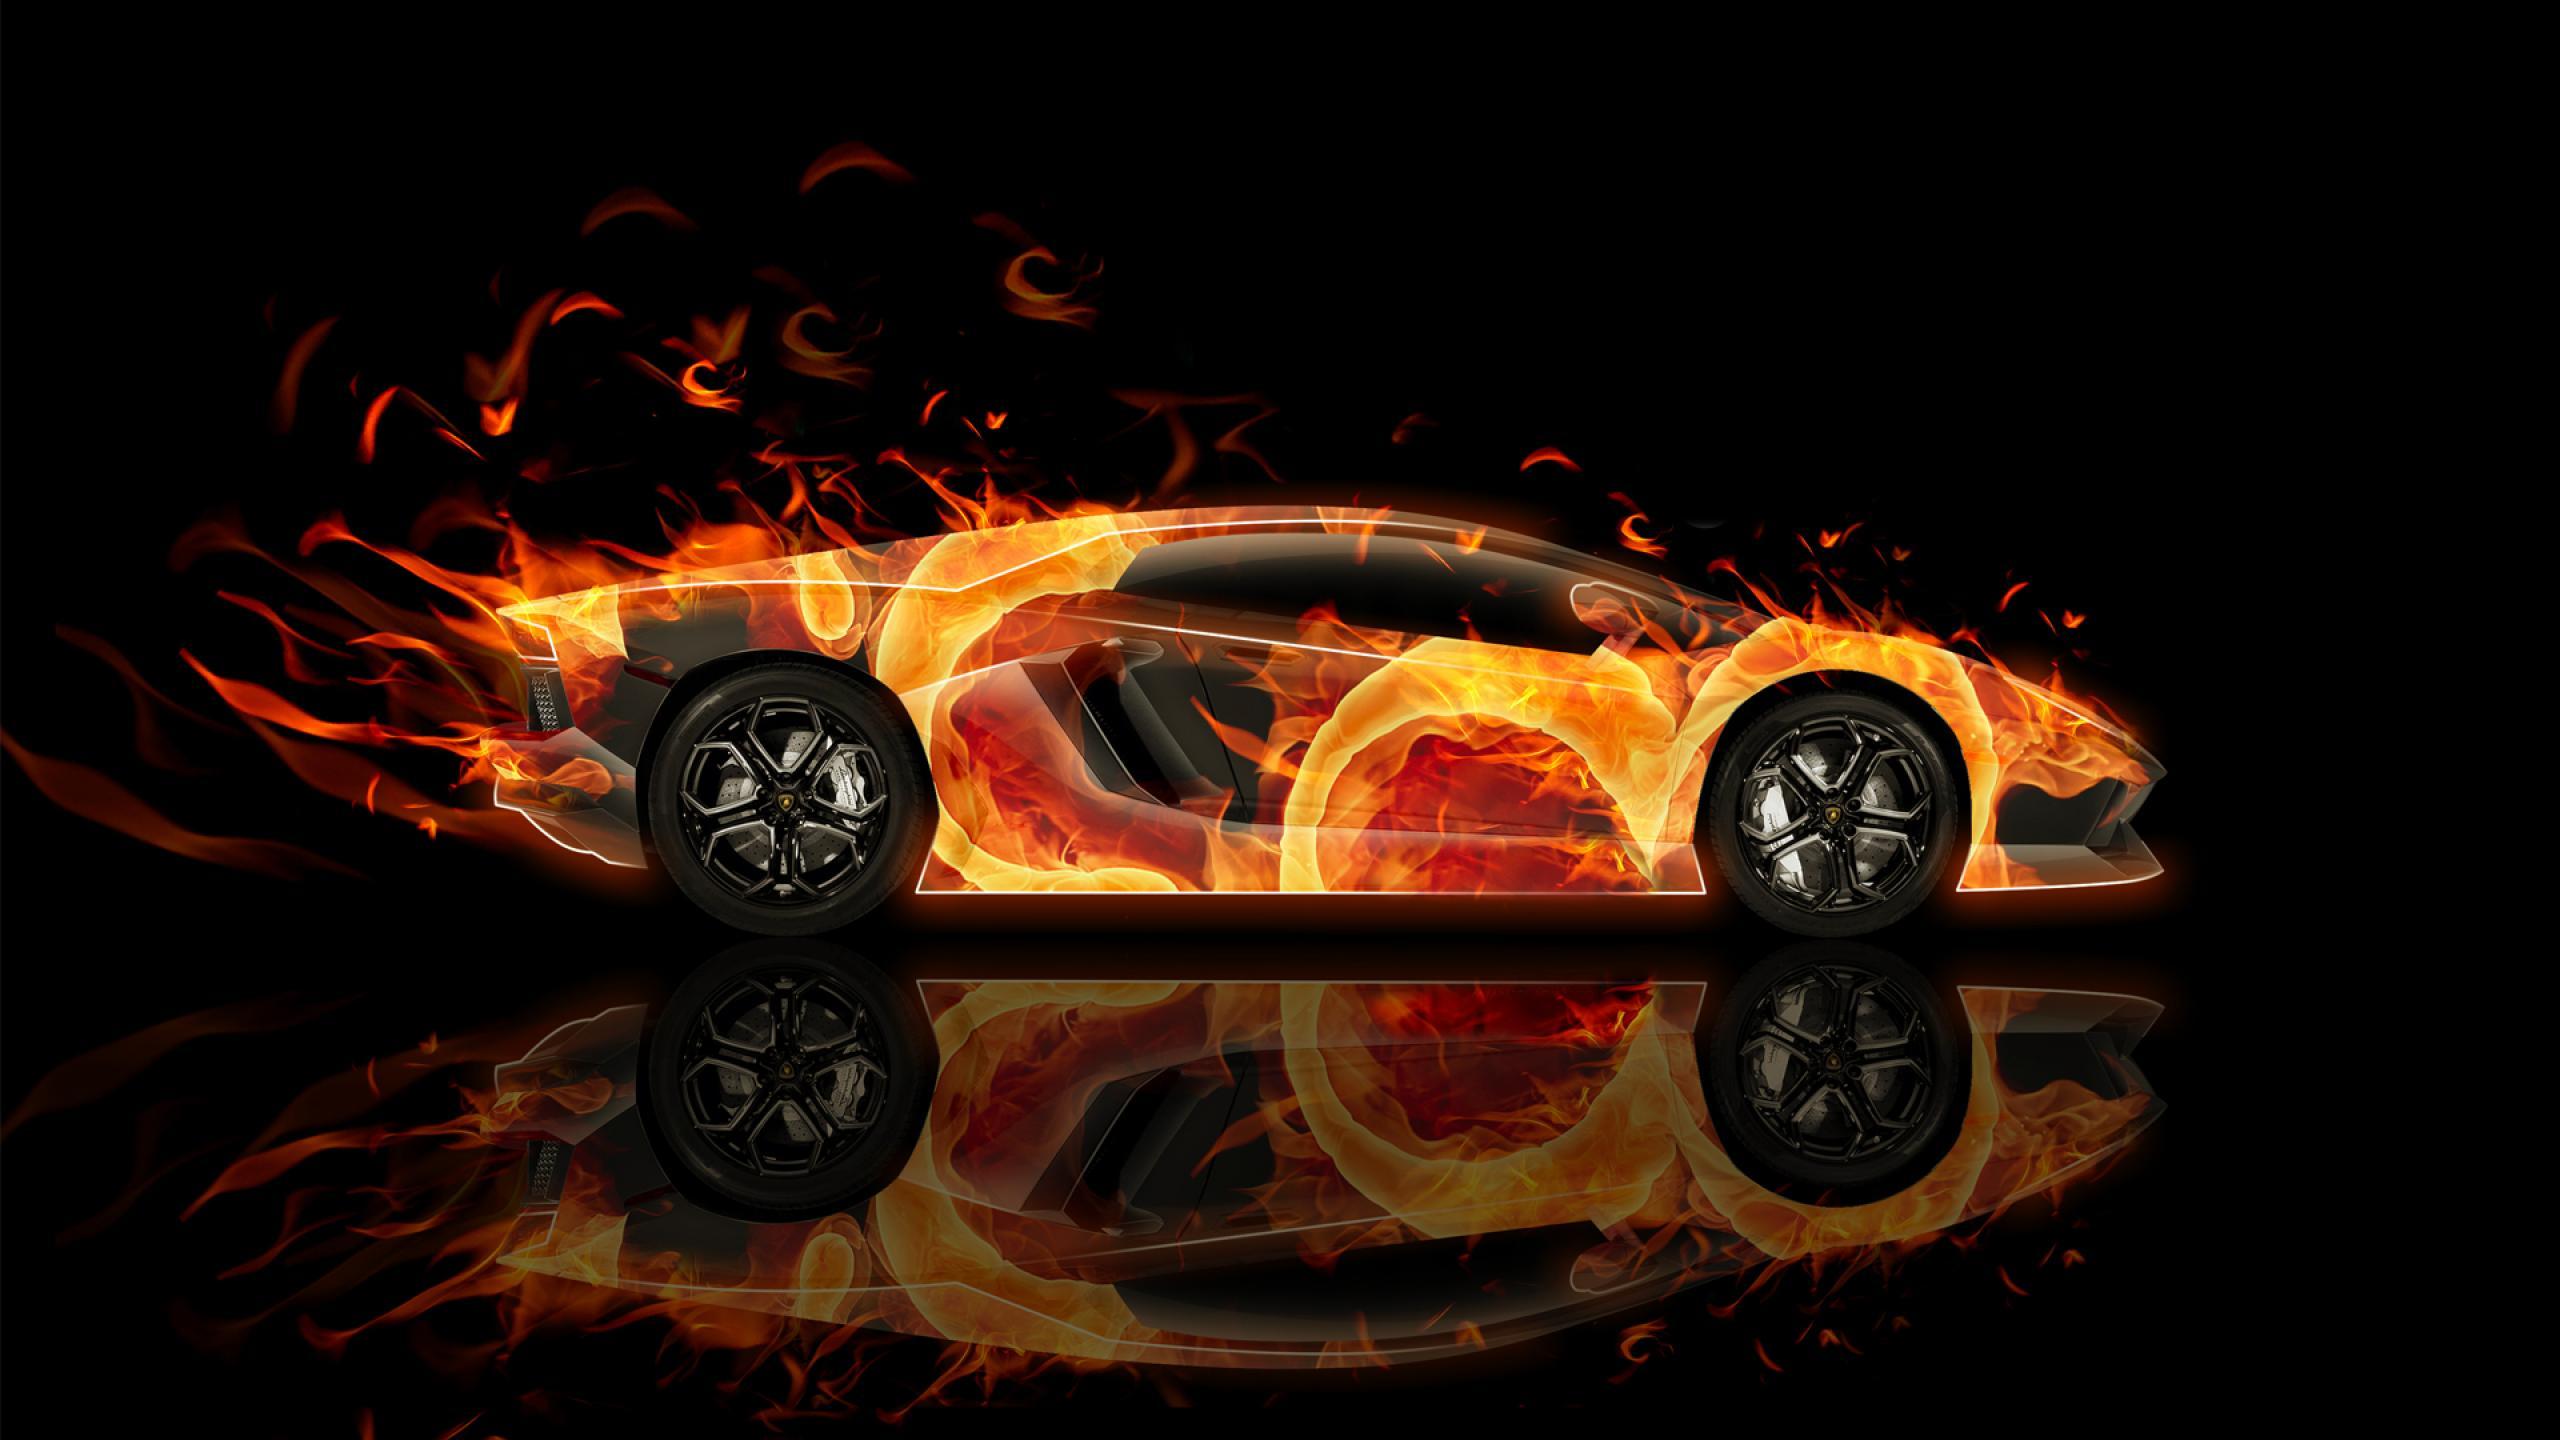 Tổng hợp 444 Galaxy Lamborghini background đẳng cấp và sang trọng nhất